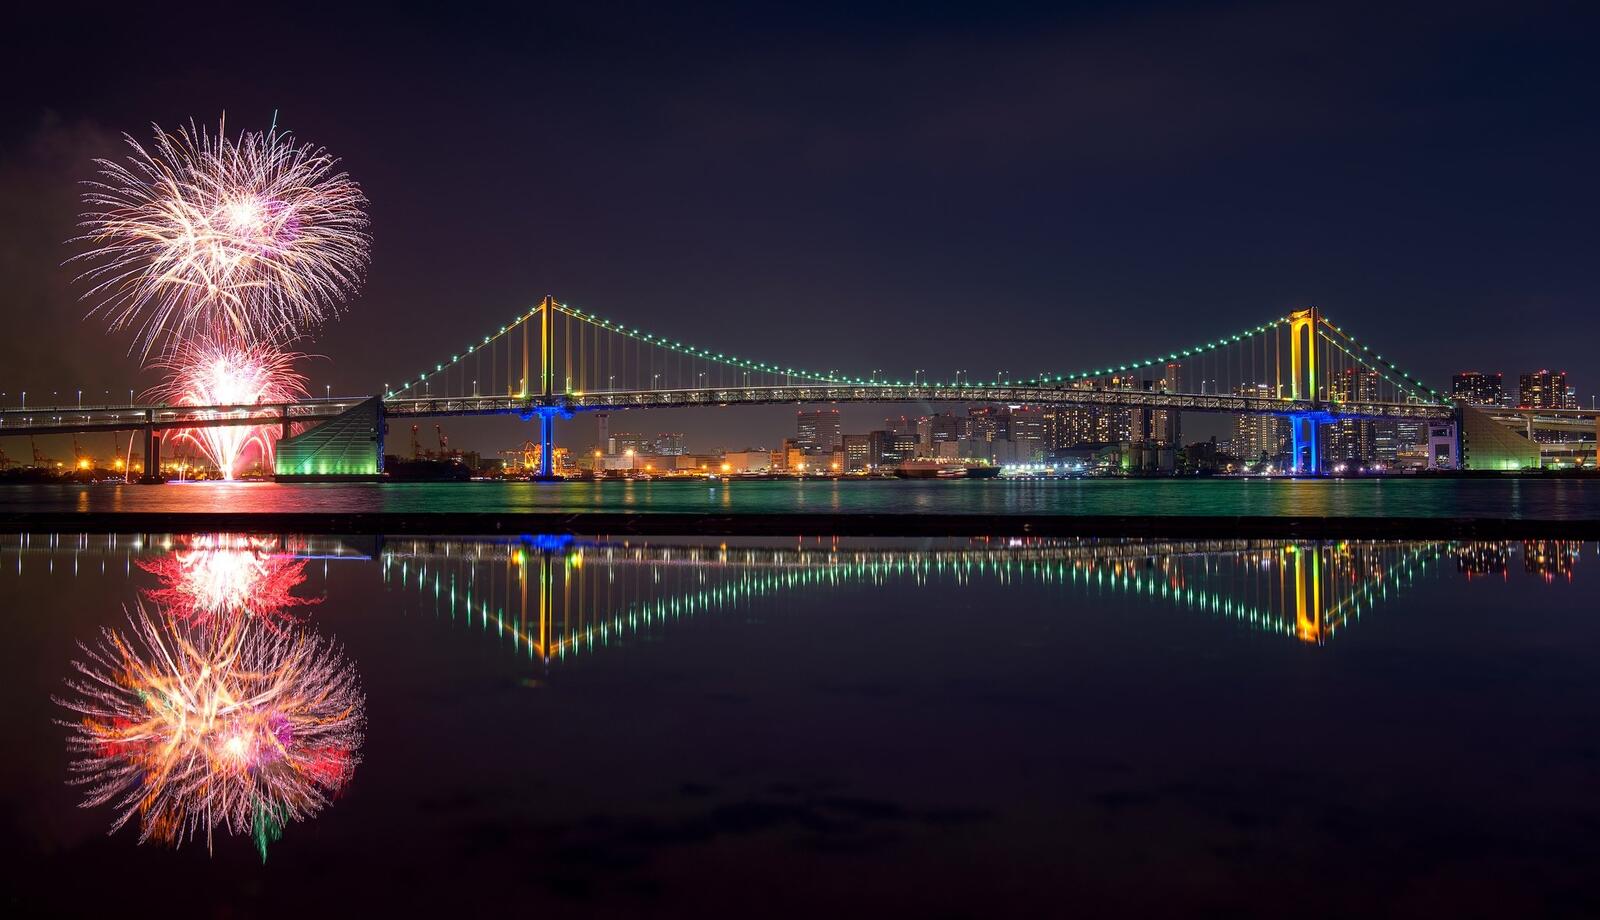 Бесплатное фото Ночной мост в Японии на фоне праздничного салюта